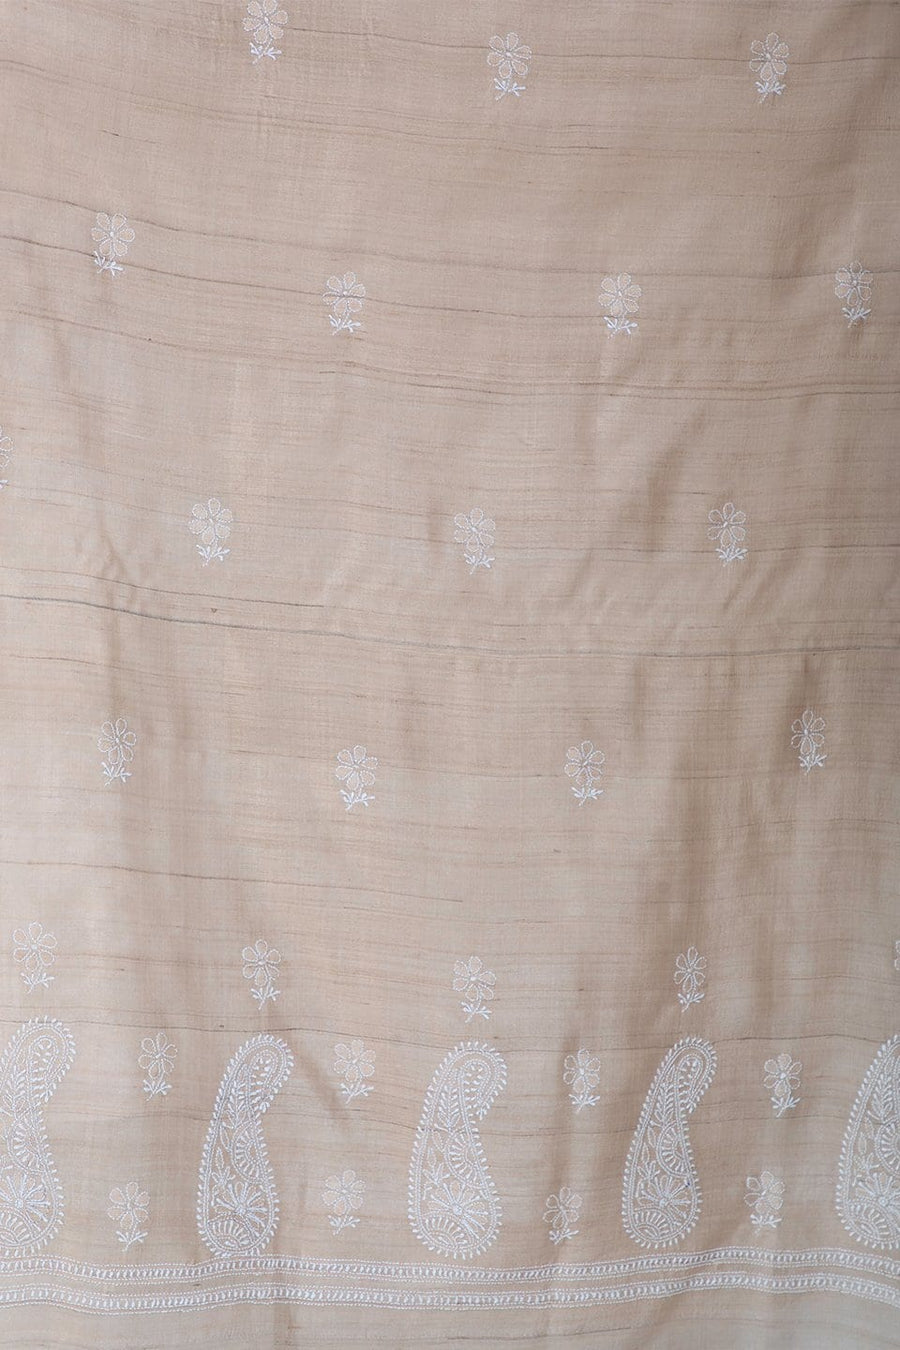 Lucknow Chikan Emporium Duppatta Cotton White Thread (Beige) 